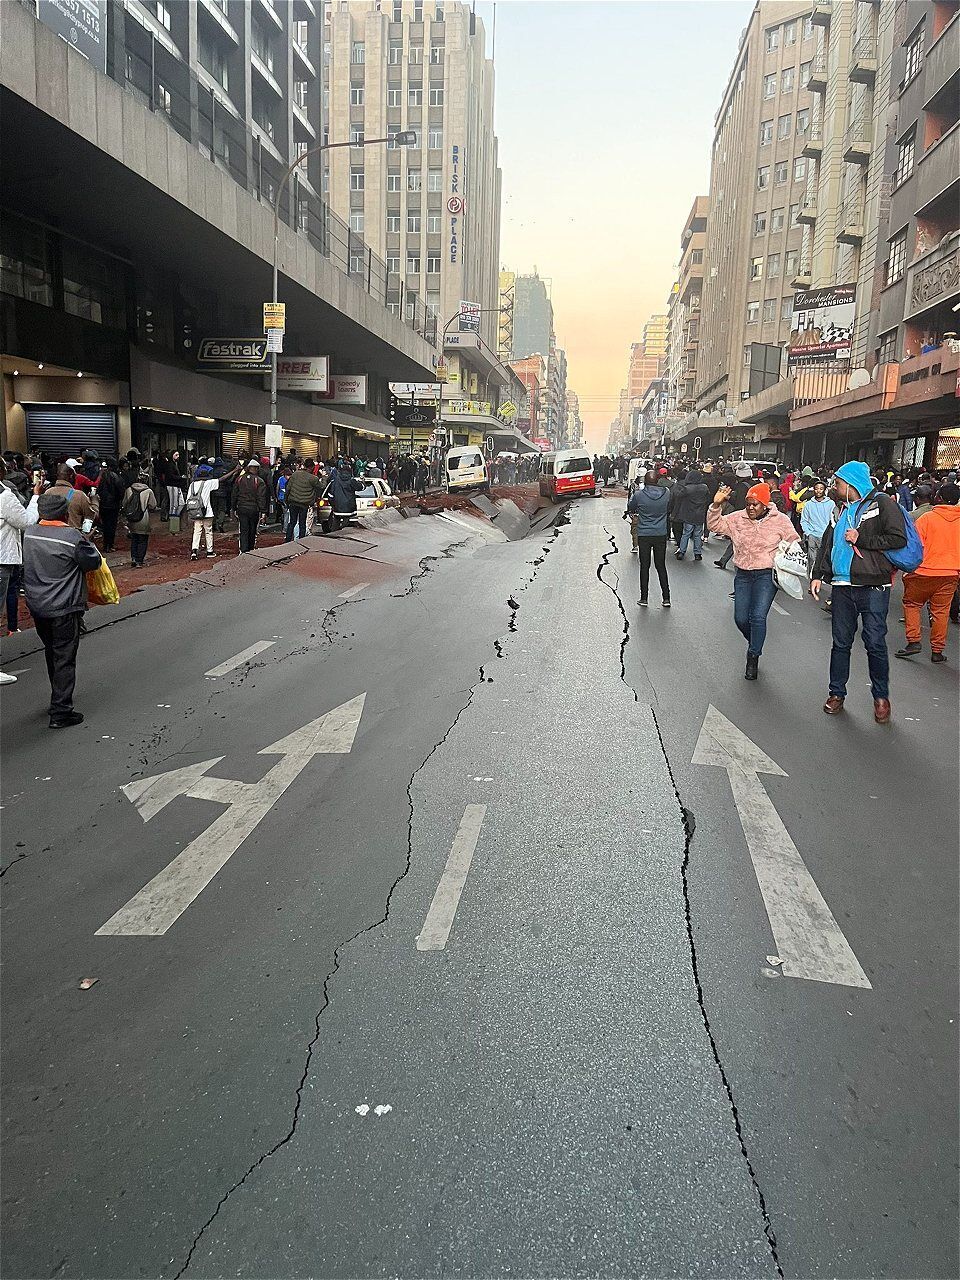 В центре крупнейшего города ЮАР раздался взрыв: есть пострадавшие. Фото и видео